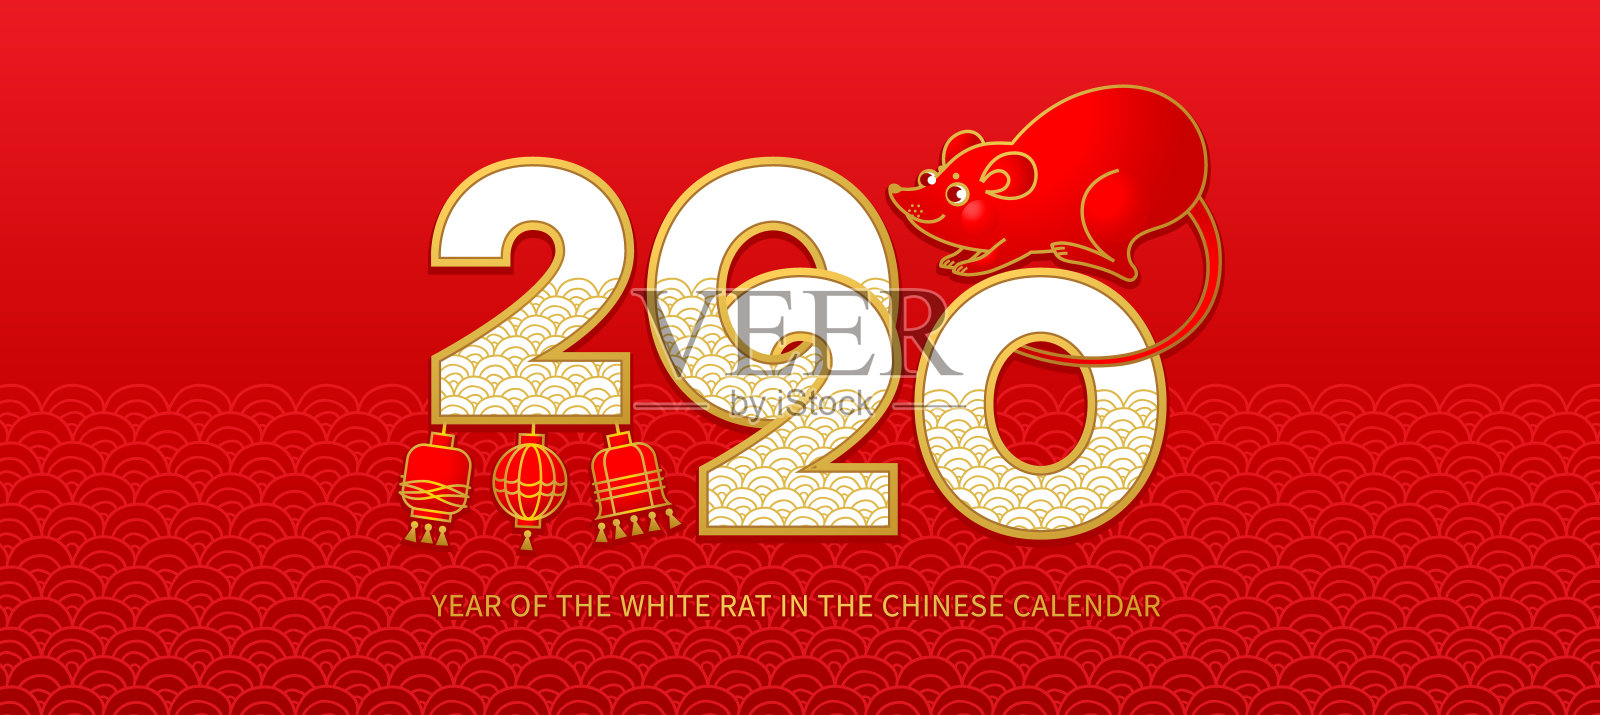 中国日历上的白色金属老鼠标志横幅。插画图片素材